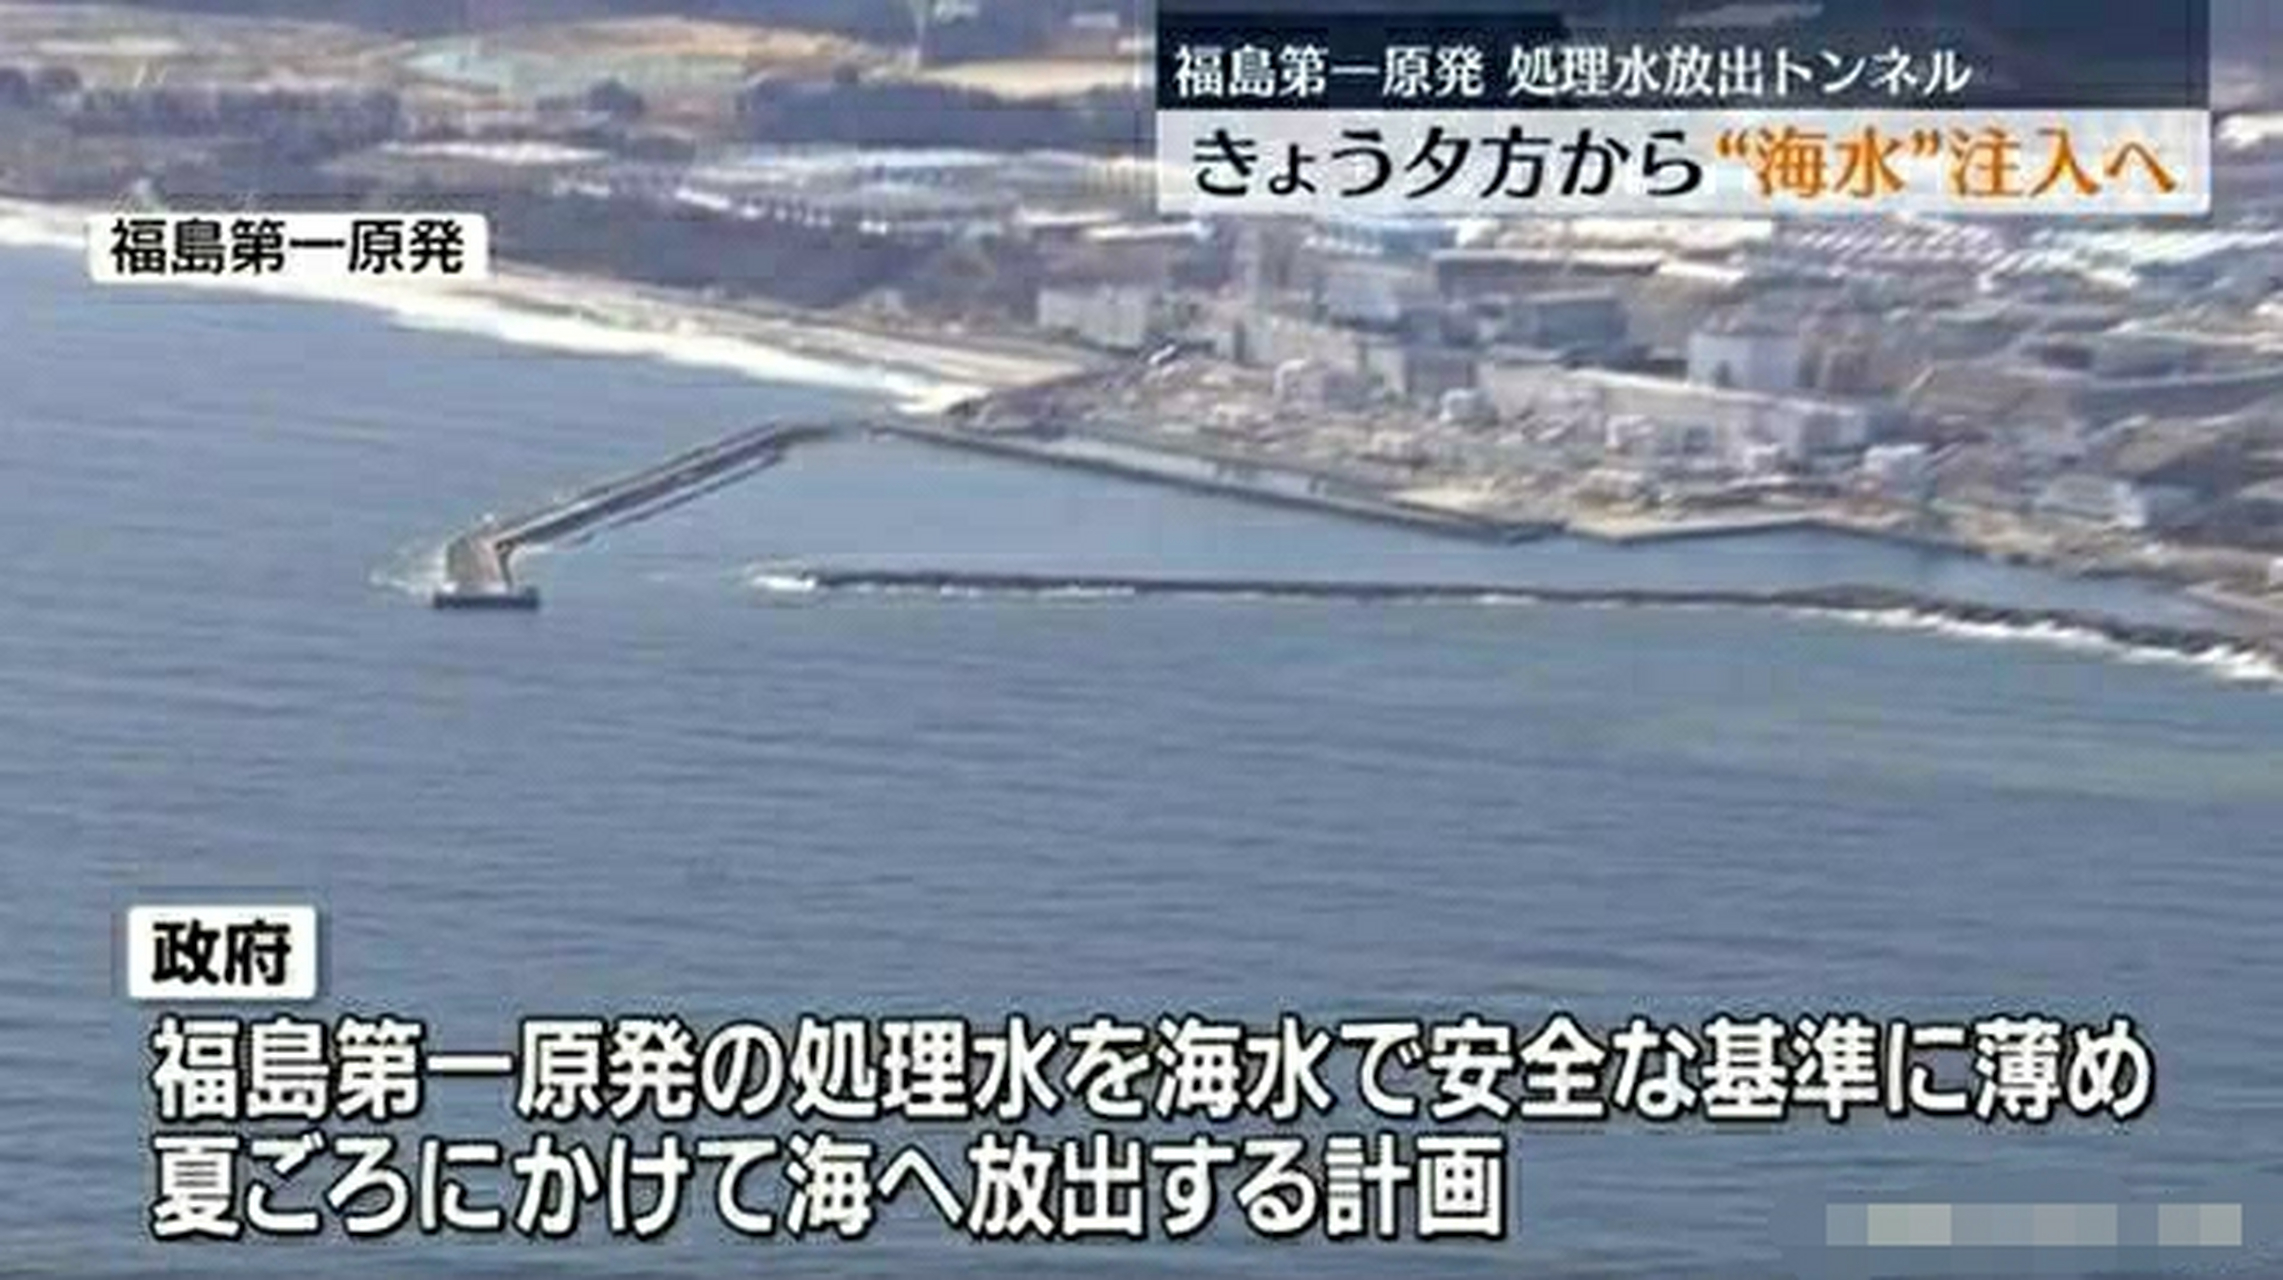 据报道,日本福岛第一核电站的核污染水排放工程即将进入试运行阶段